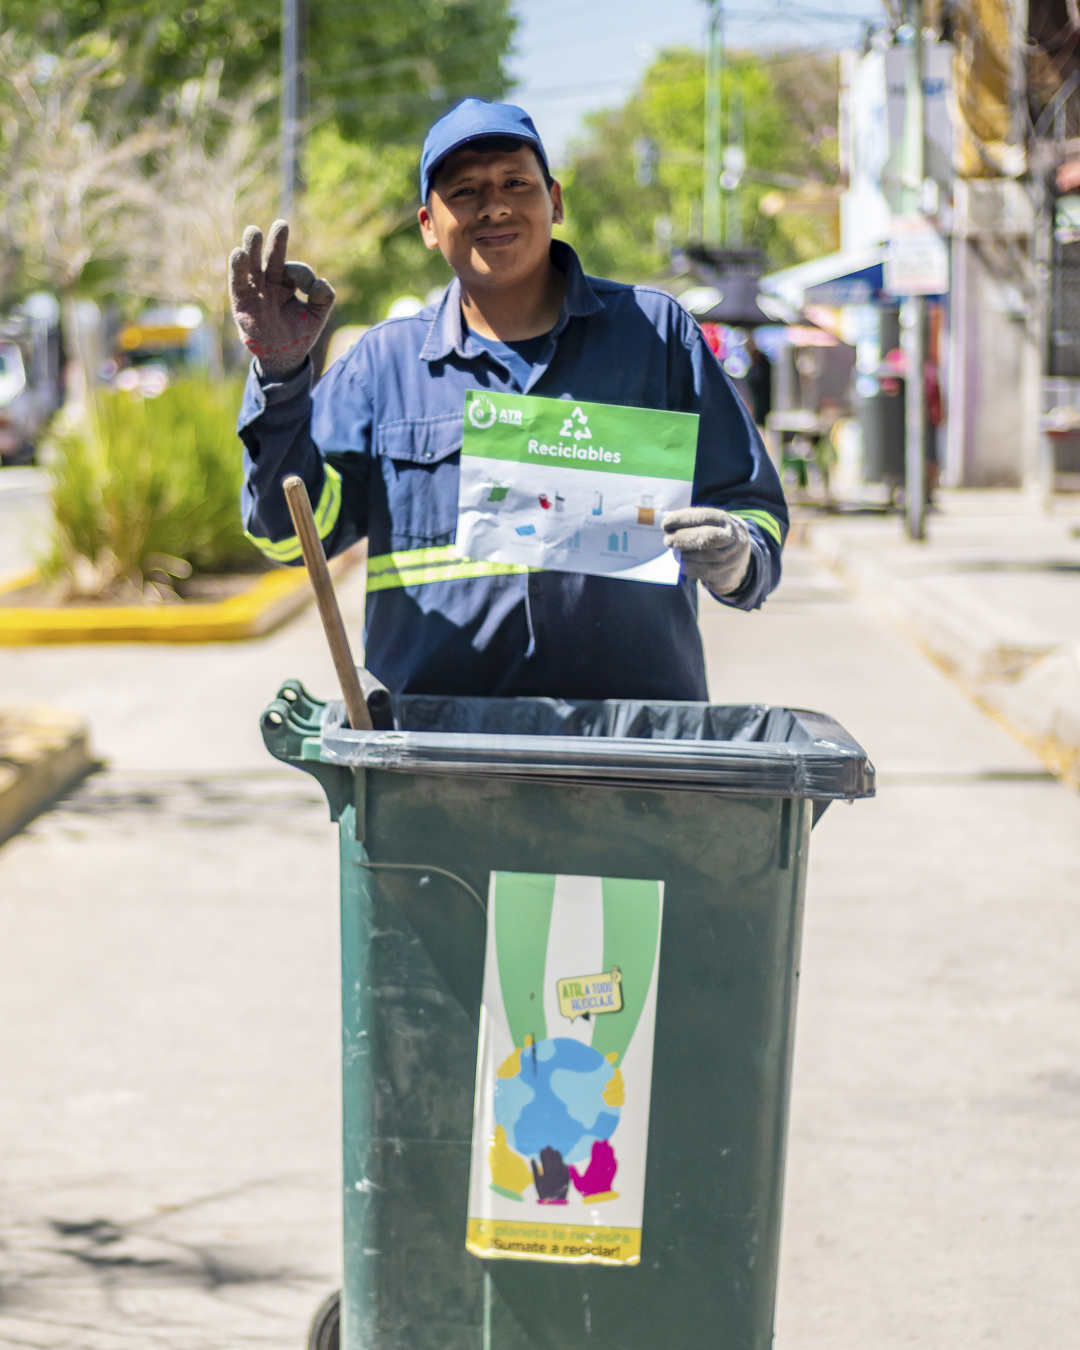 El programa A Todo Reciclaje del Barrio Mugica ganó un premio de impacto social y recibe 5.000 euros